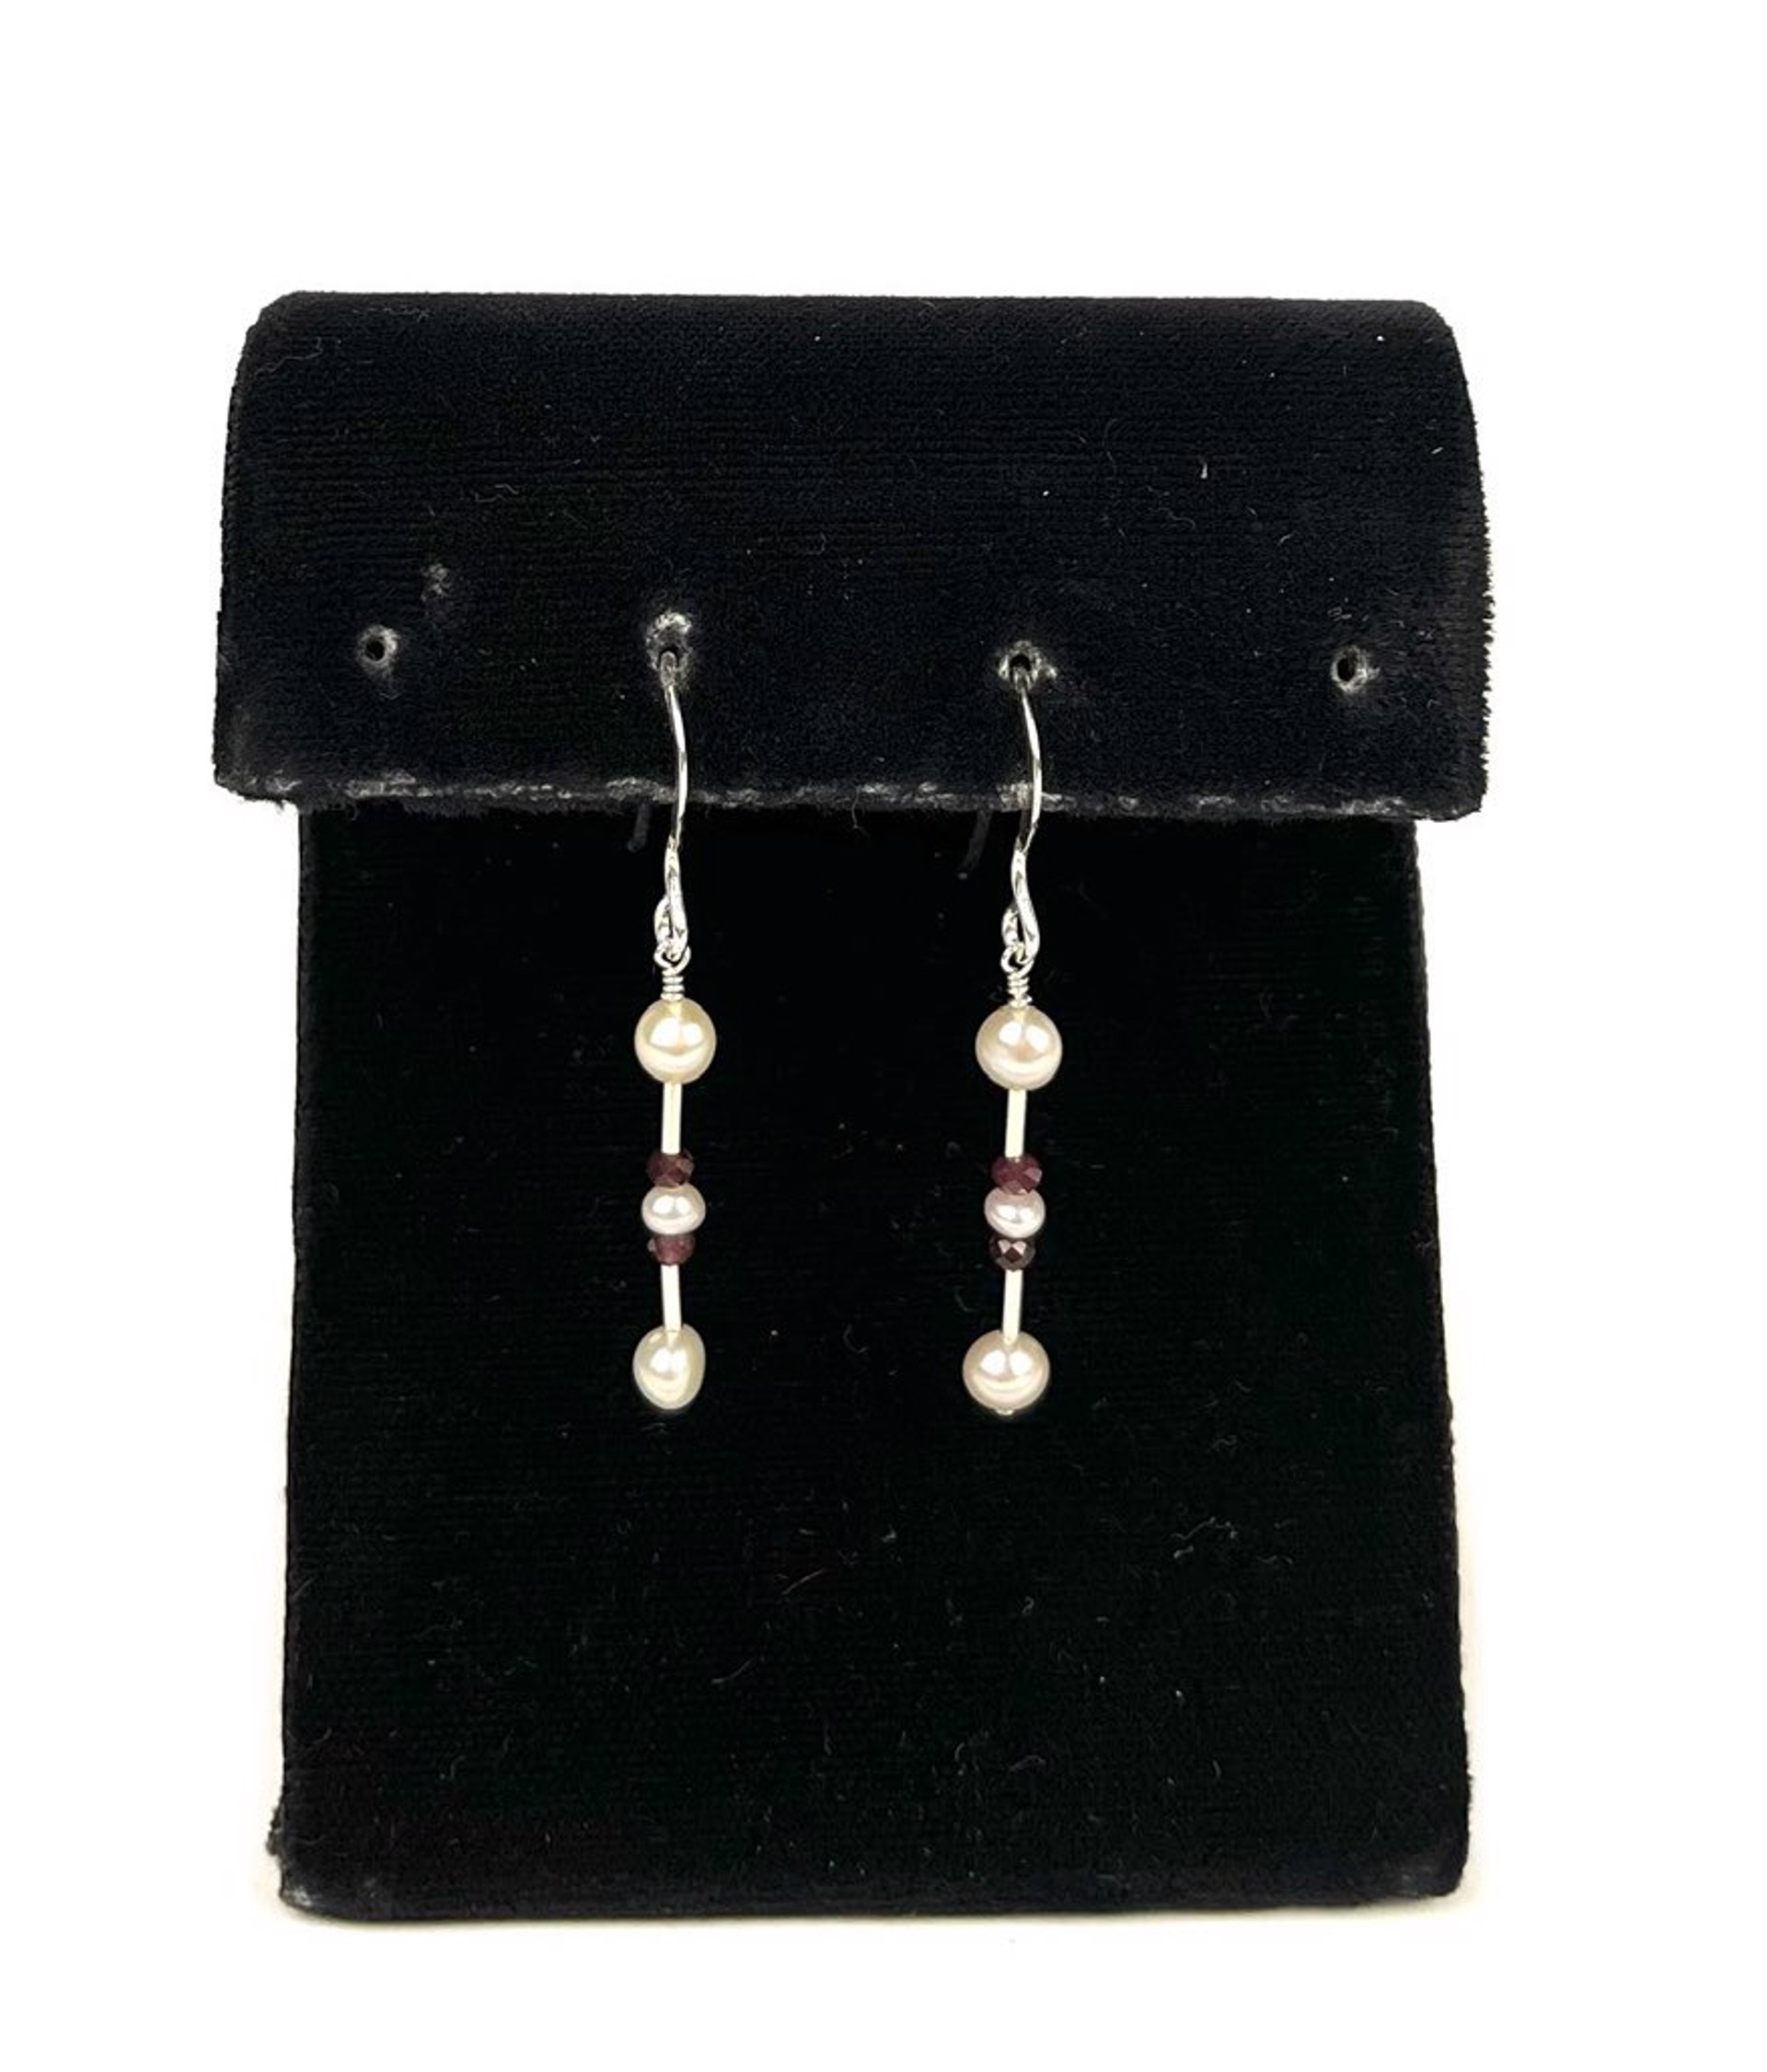 Freshwater Pearl and Garnet Bar Sterling Silver Earrings by Lisa Kelley